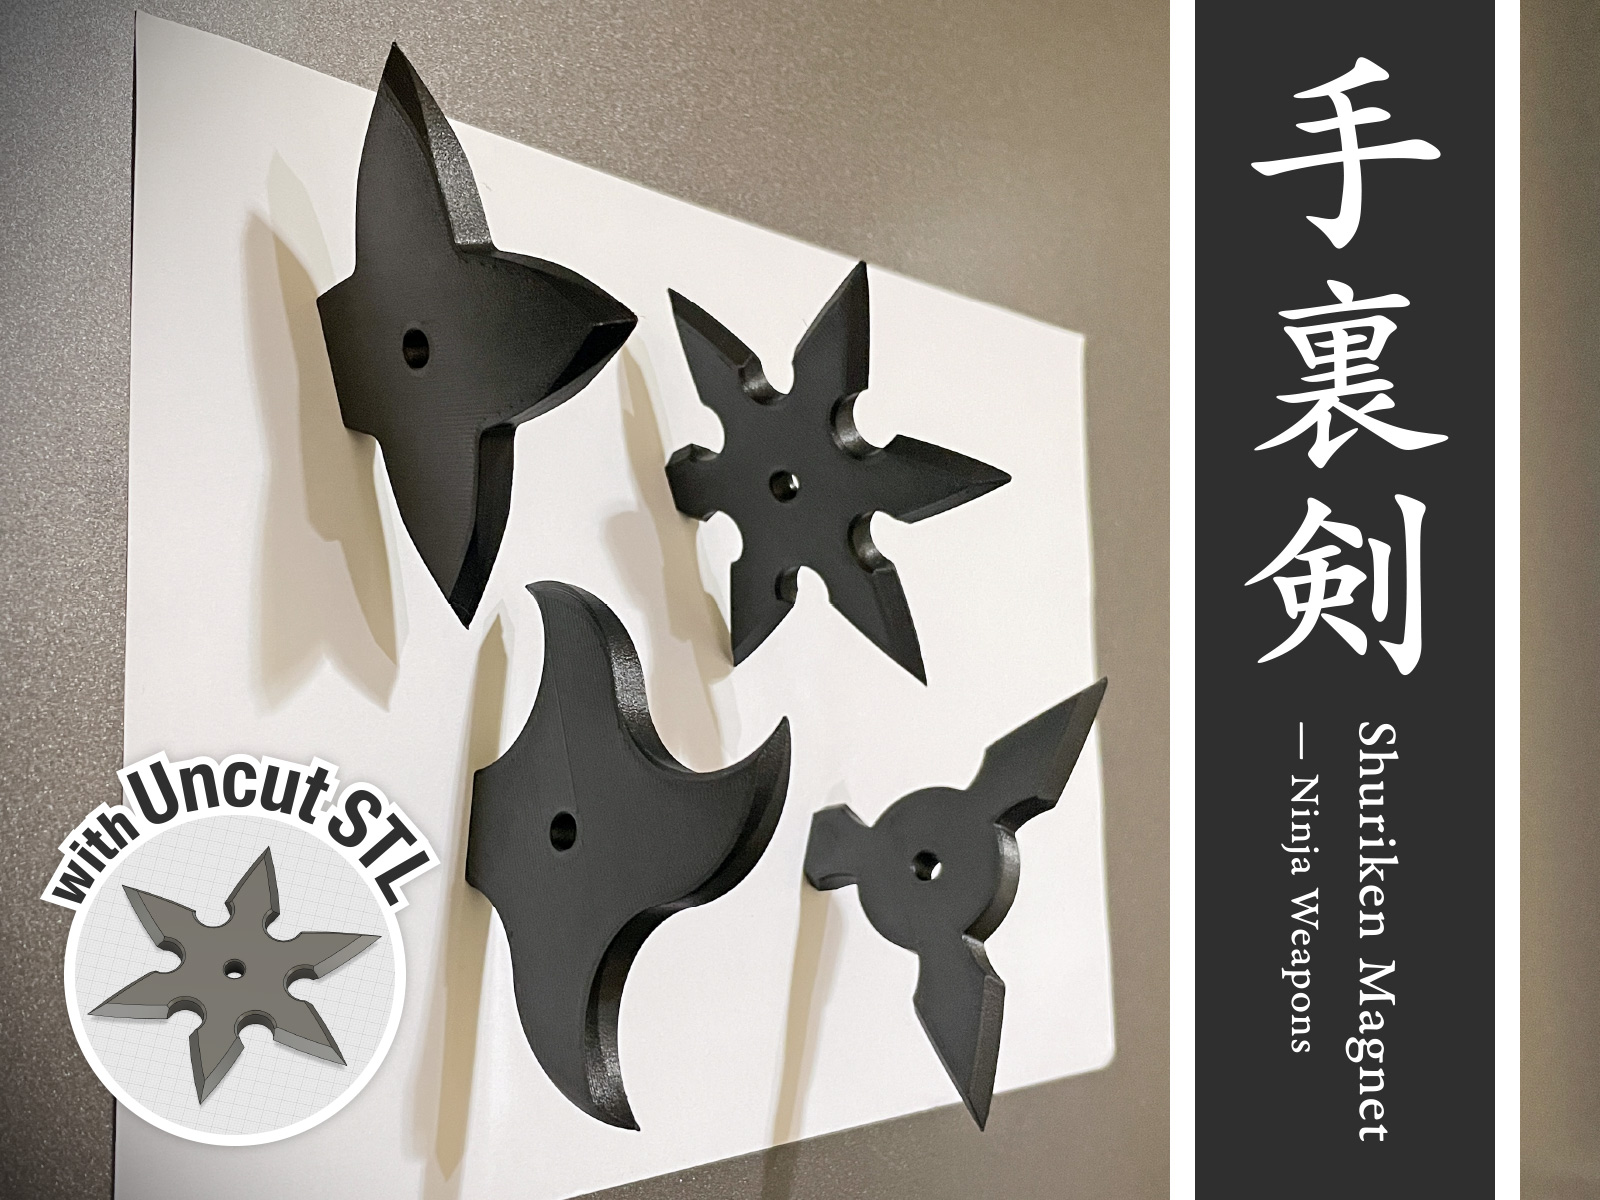 Shuriken Magnet — Ninja Weapons